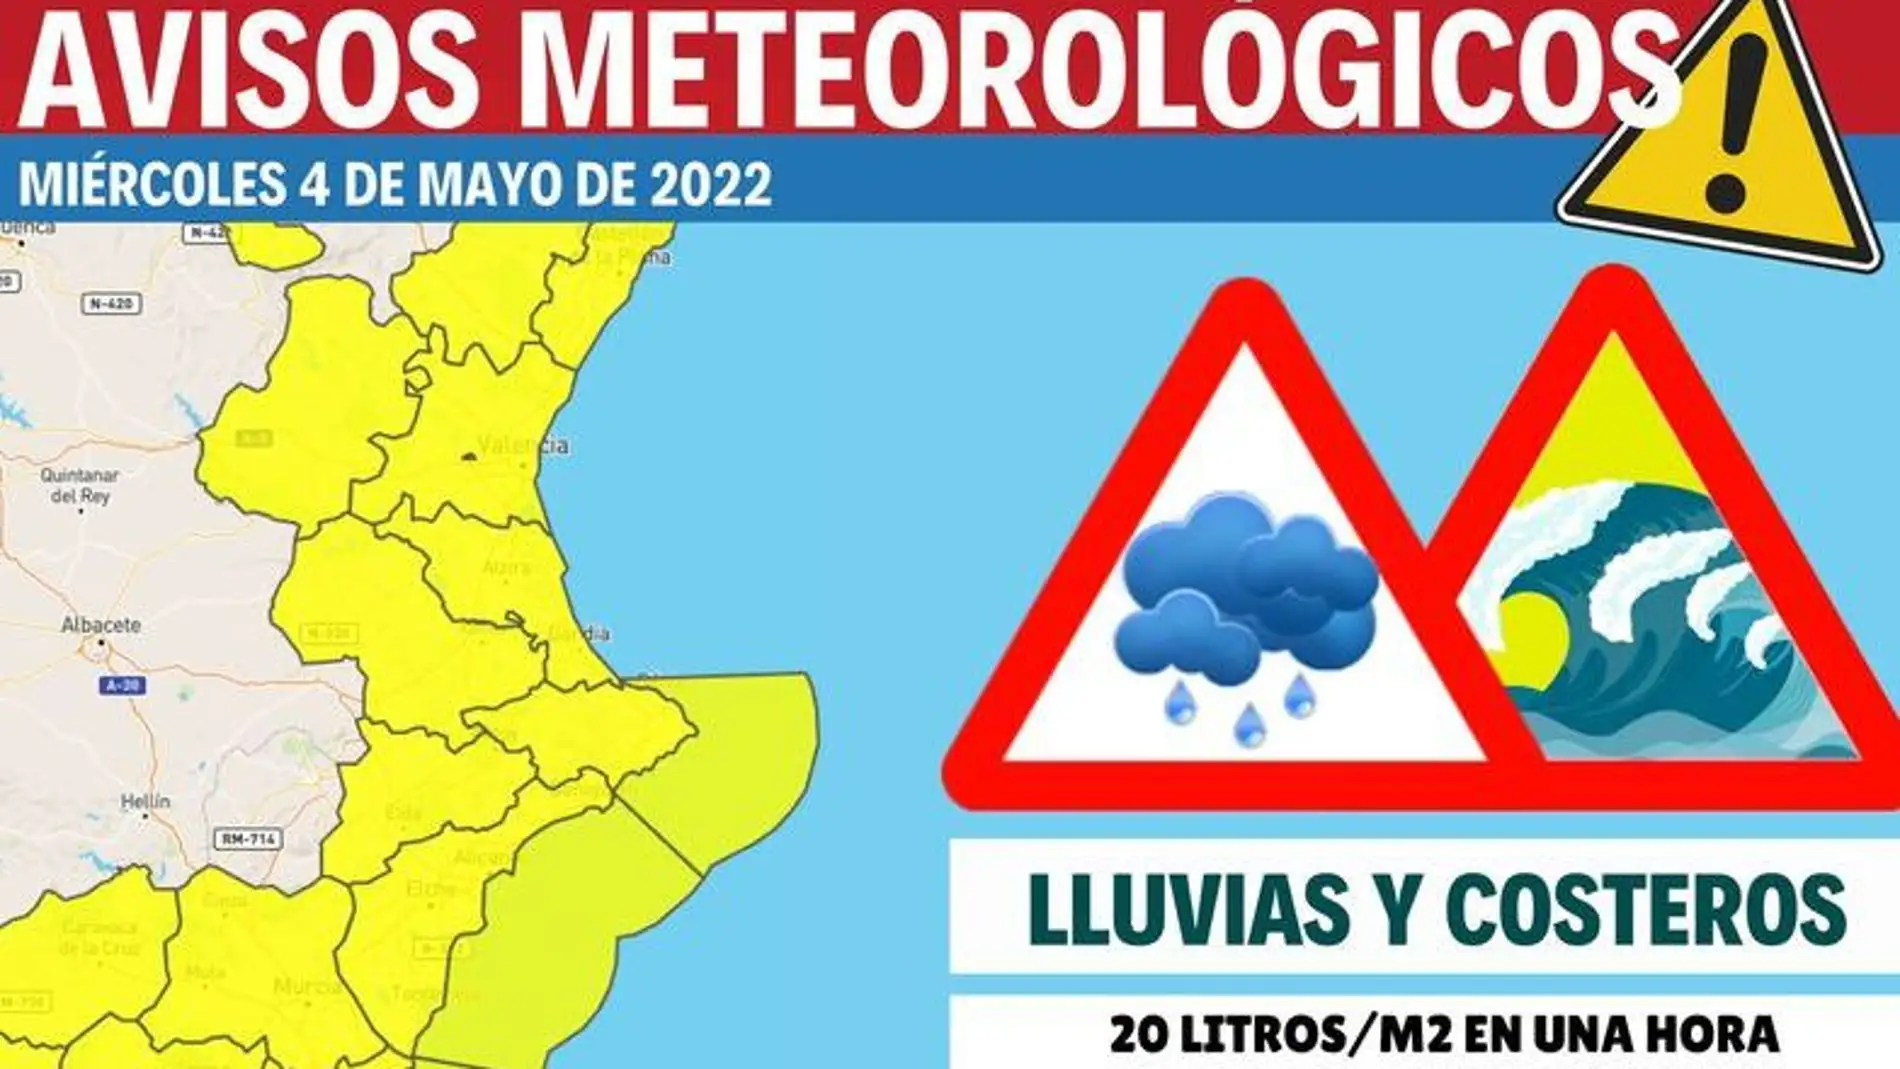 La previsión según Proyecto Mastral octavo miércoles consecutivo de lluvias    